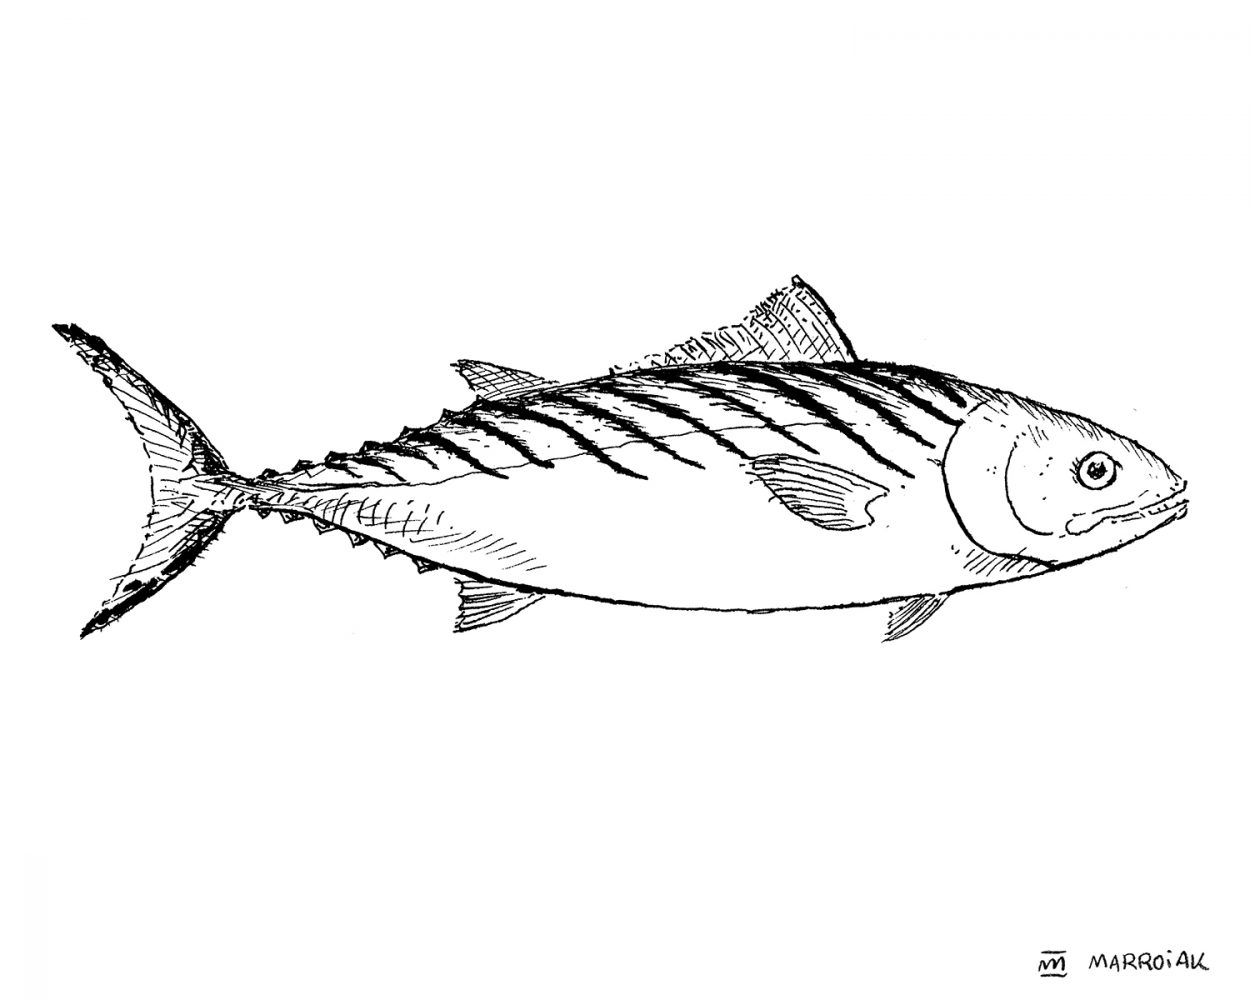 Dibujo en blanco y negro del pescado Bonito, sarda sarda. Ilustración marinera